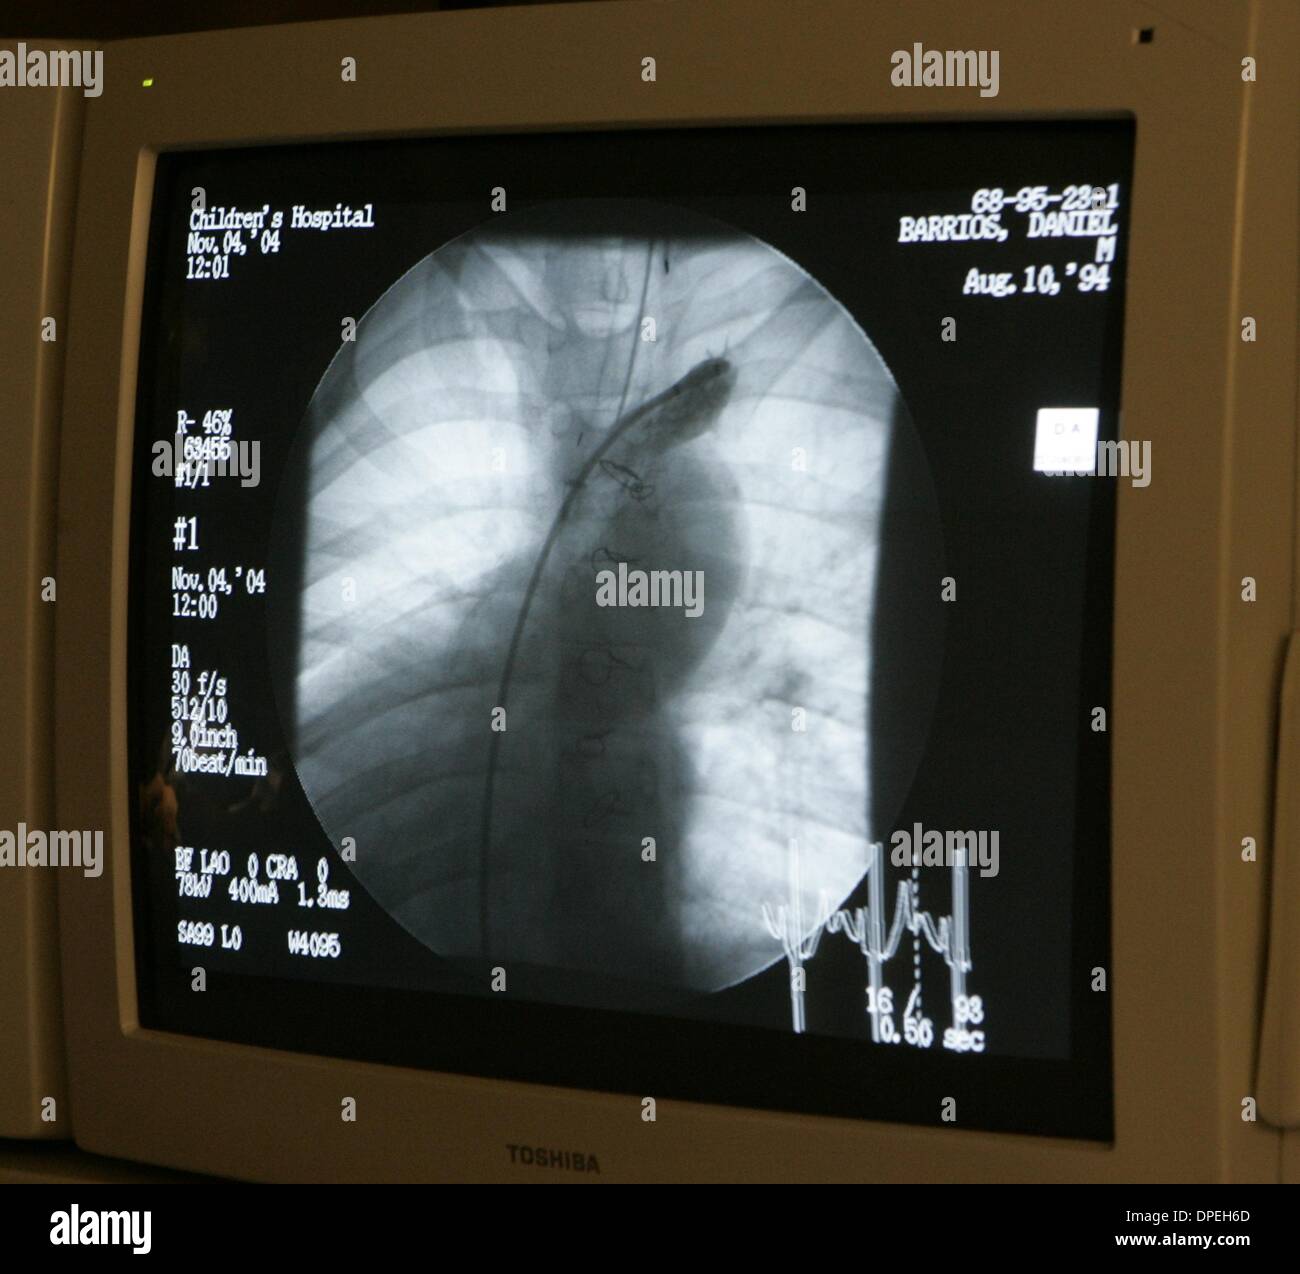 (Veröffentlicht am 06.11.2004, b-7:2) Ein Monitor neben einem Operationstisch bei Childrens Hospital zeigt ein Angiogramm einer 10 jährigen Herzens, als Ärzte das Blut sah fließen in die Lungenarterien. UT/DON KOHLBAUER Stockfoto